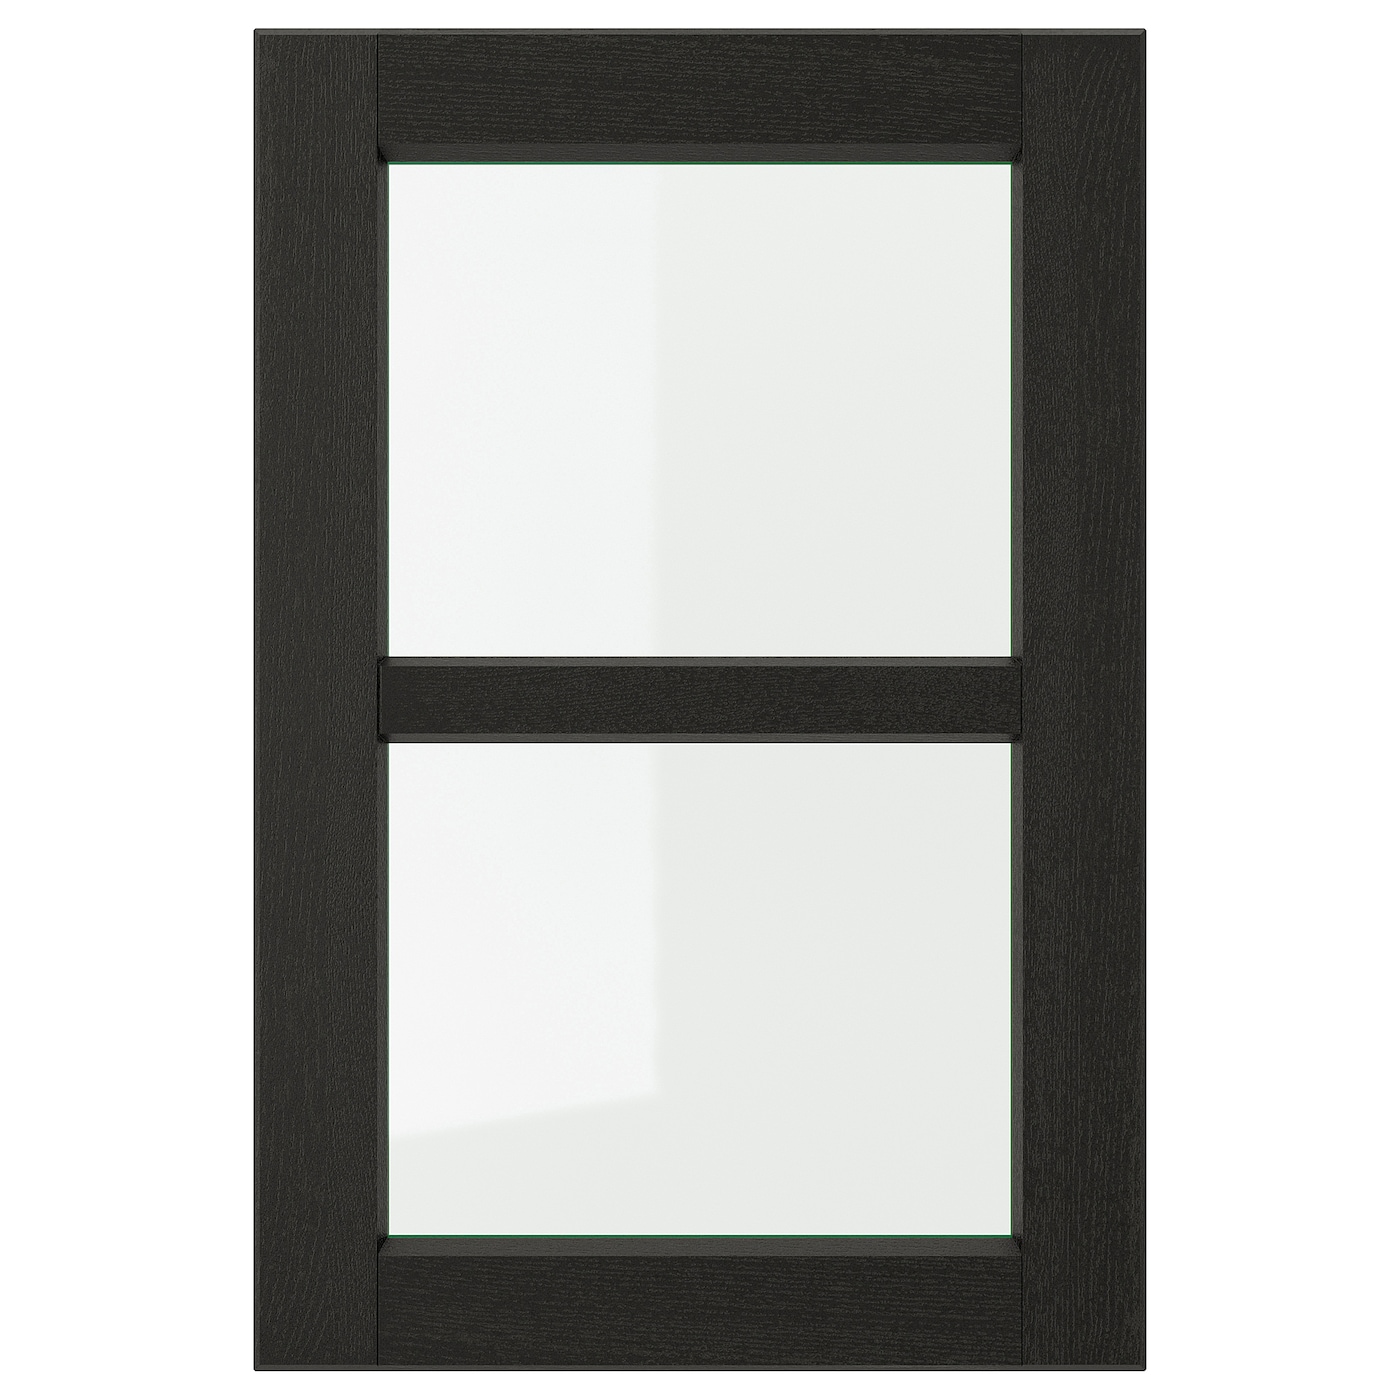 Дверца со стеклом - IKEA LERHYTTAN, 60х40 см, черный, ЛЕРХЮТТАН ИКЕА